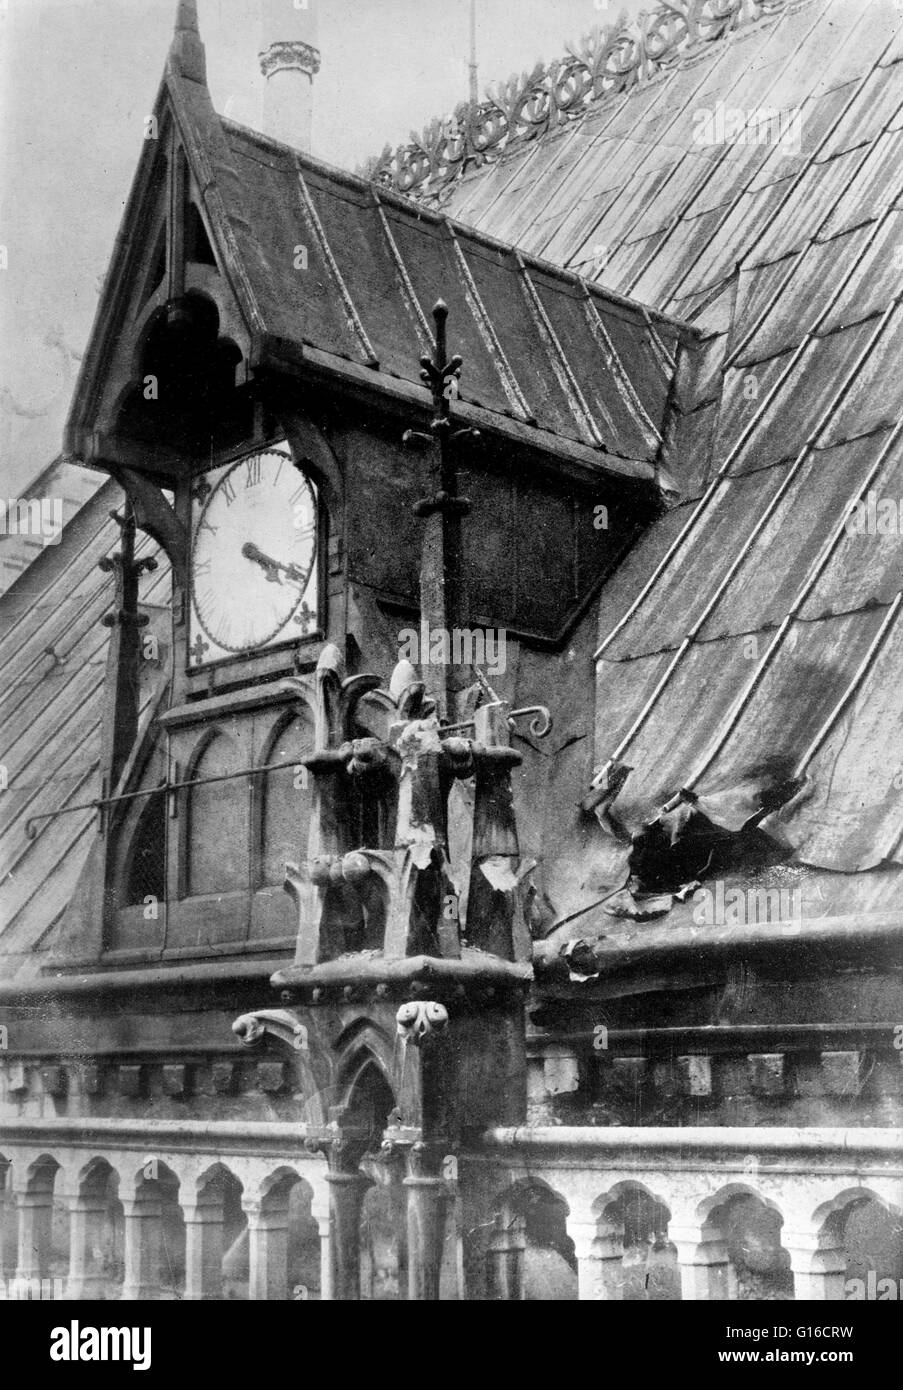 La photographie montre le toit de la cathédrale Notre-Dame de Paris, France, après avoir été frappé par une bombe allemande en octobre 1914 au cours de la PREMIÈRE GUERRE MONDIALE. Notre-Dame de Paris (Notre Dame de Paris est une cathédrale catholique de Paris, France. La cathédrale est largement cons Banque D'Images